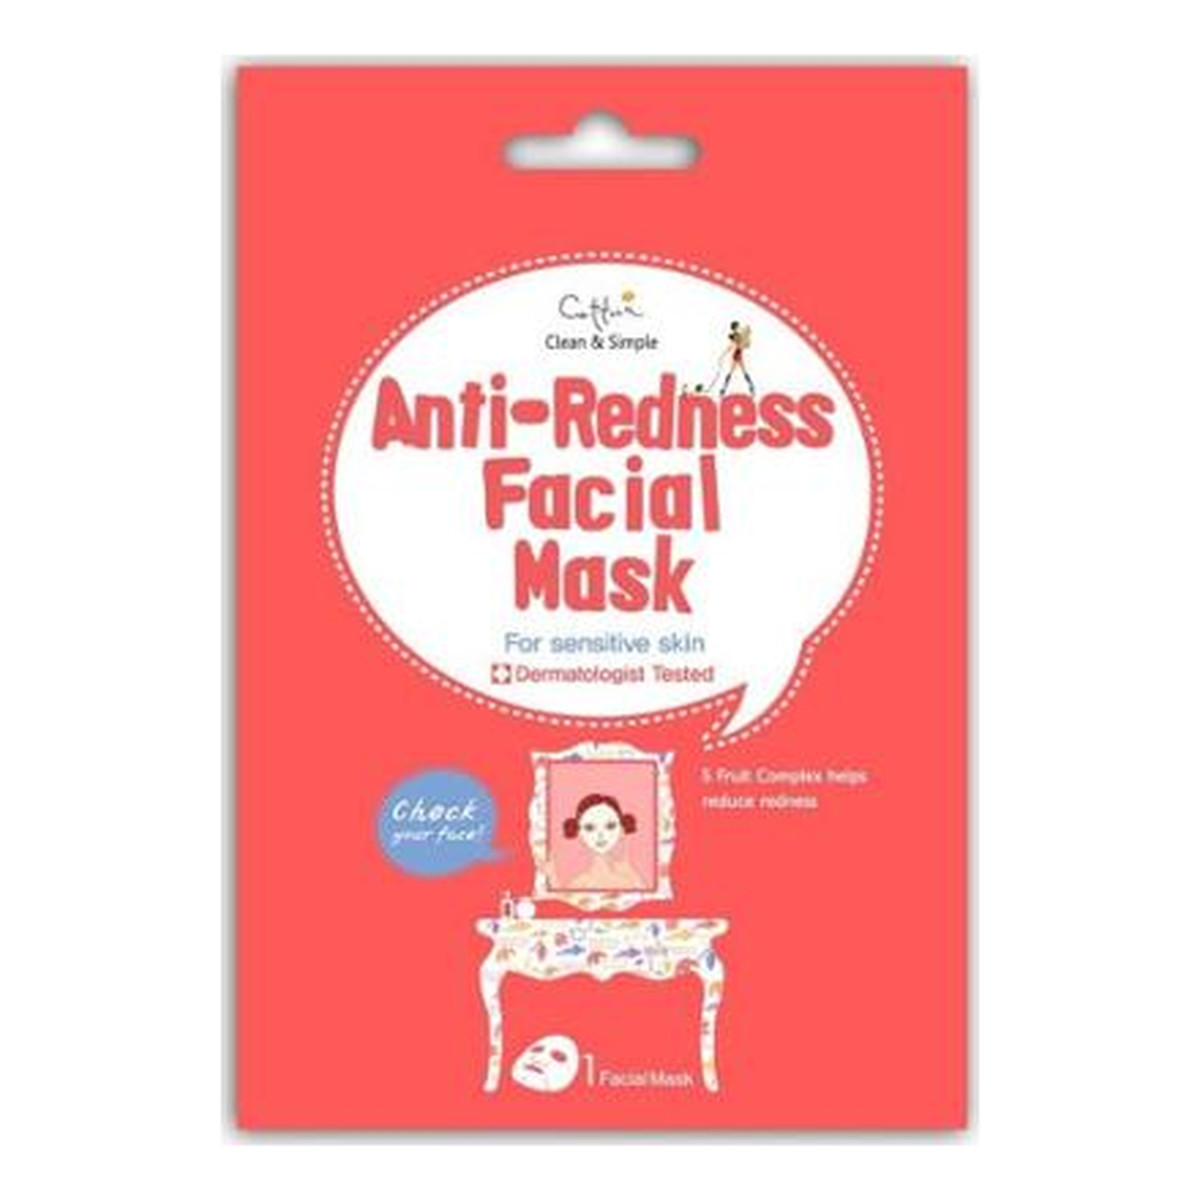 Cettua Anti-Redness Facial Mask maska niwelująca zaczerwienienia